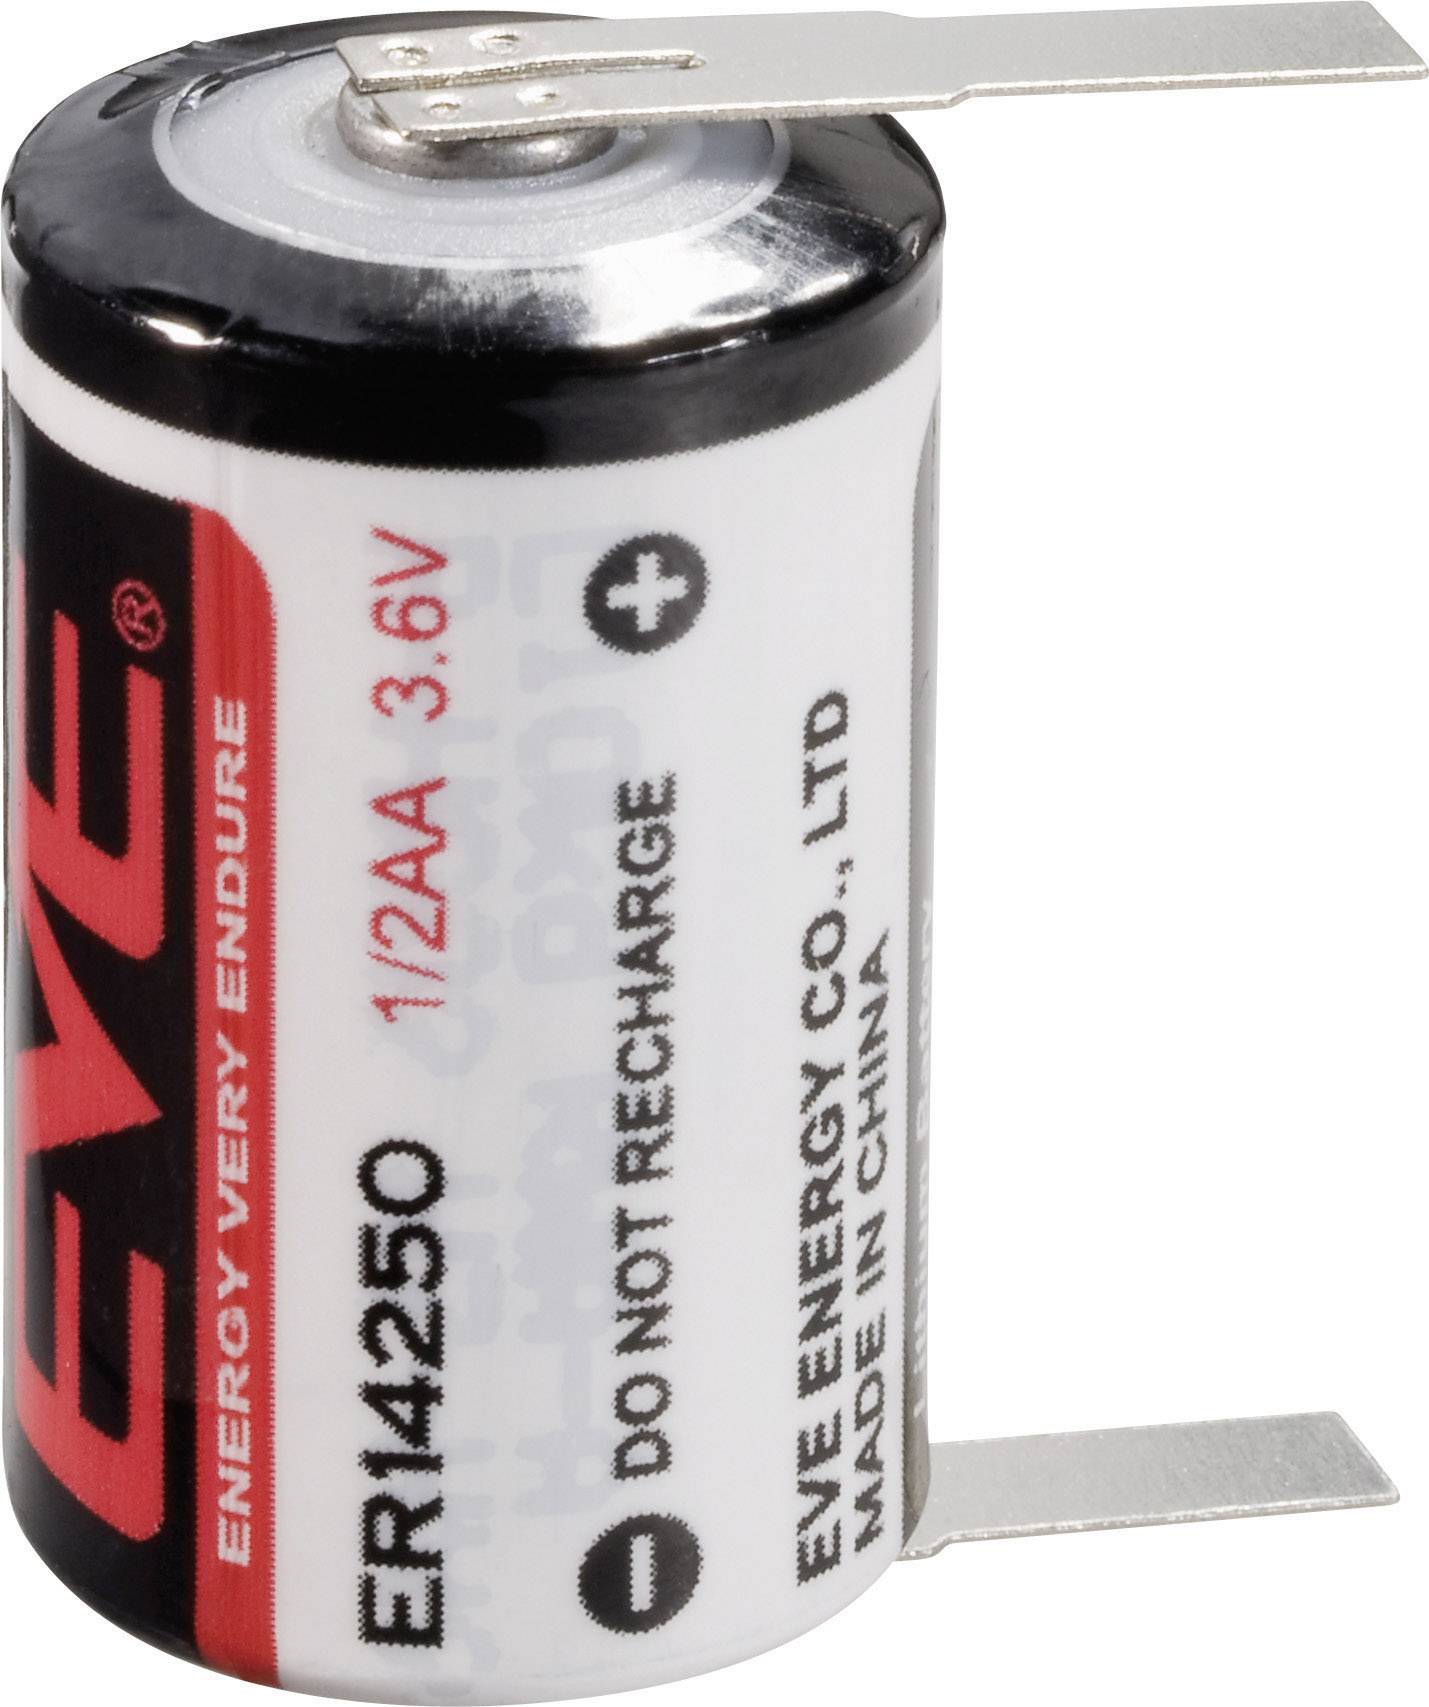 EVE ER14250T speciální typ baterie 1/2 AA pájecí špička ve tvaru U lithiová  3.6 V 1200 mAh 1 ks